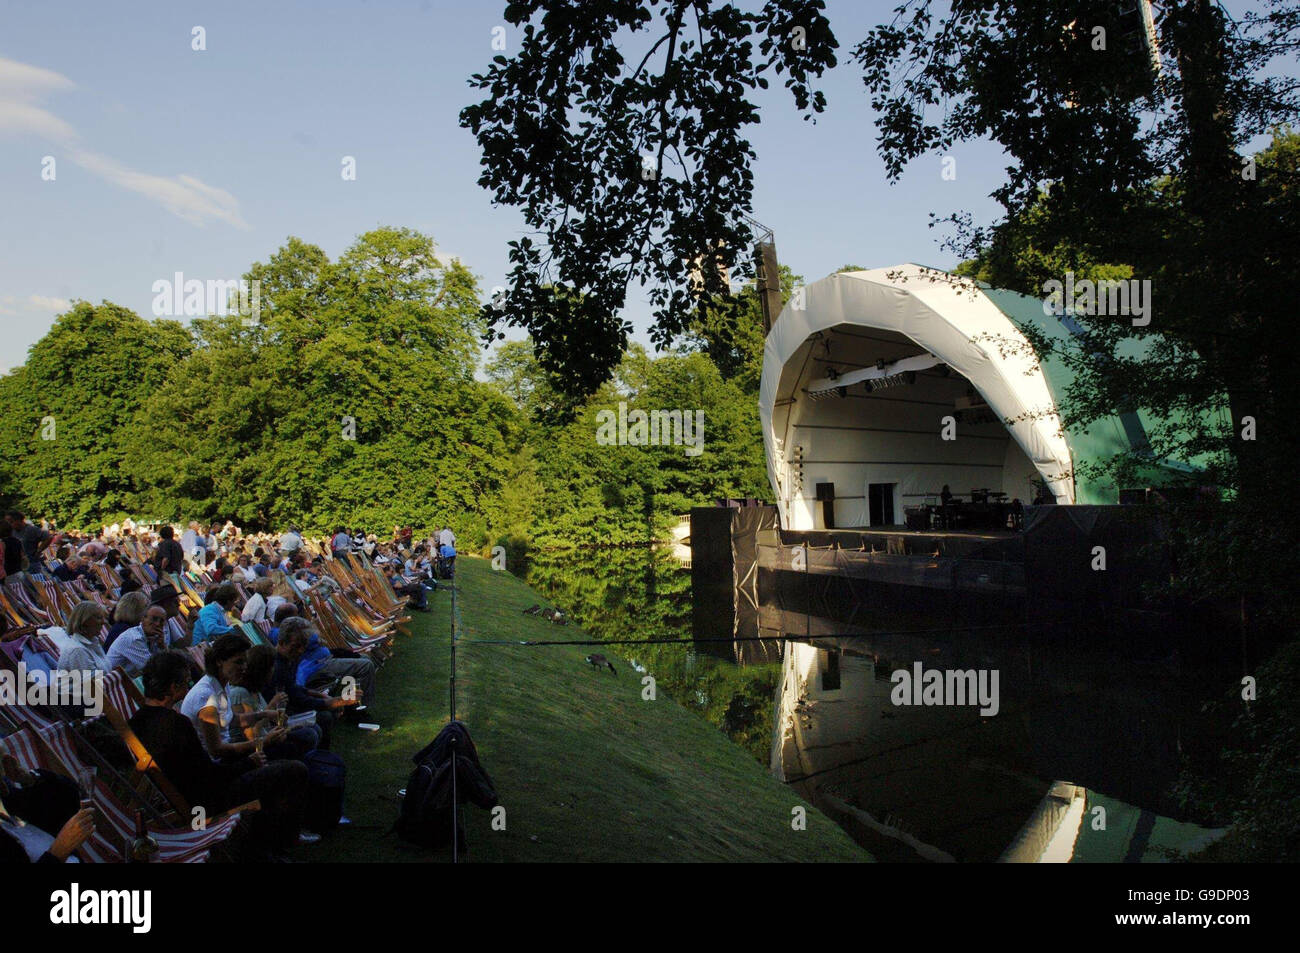 La folla attende l'inizio del concerto di Art Garfunkel sul palco del New Floating per celebrare il 55° anniversario dei concerti al sacco alla Kenwood House di Hampstead Heath, a nord di Londra. Foto Stock